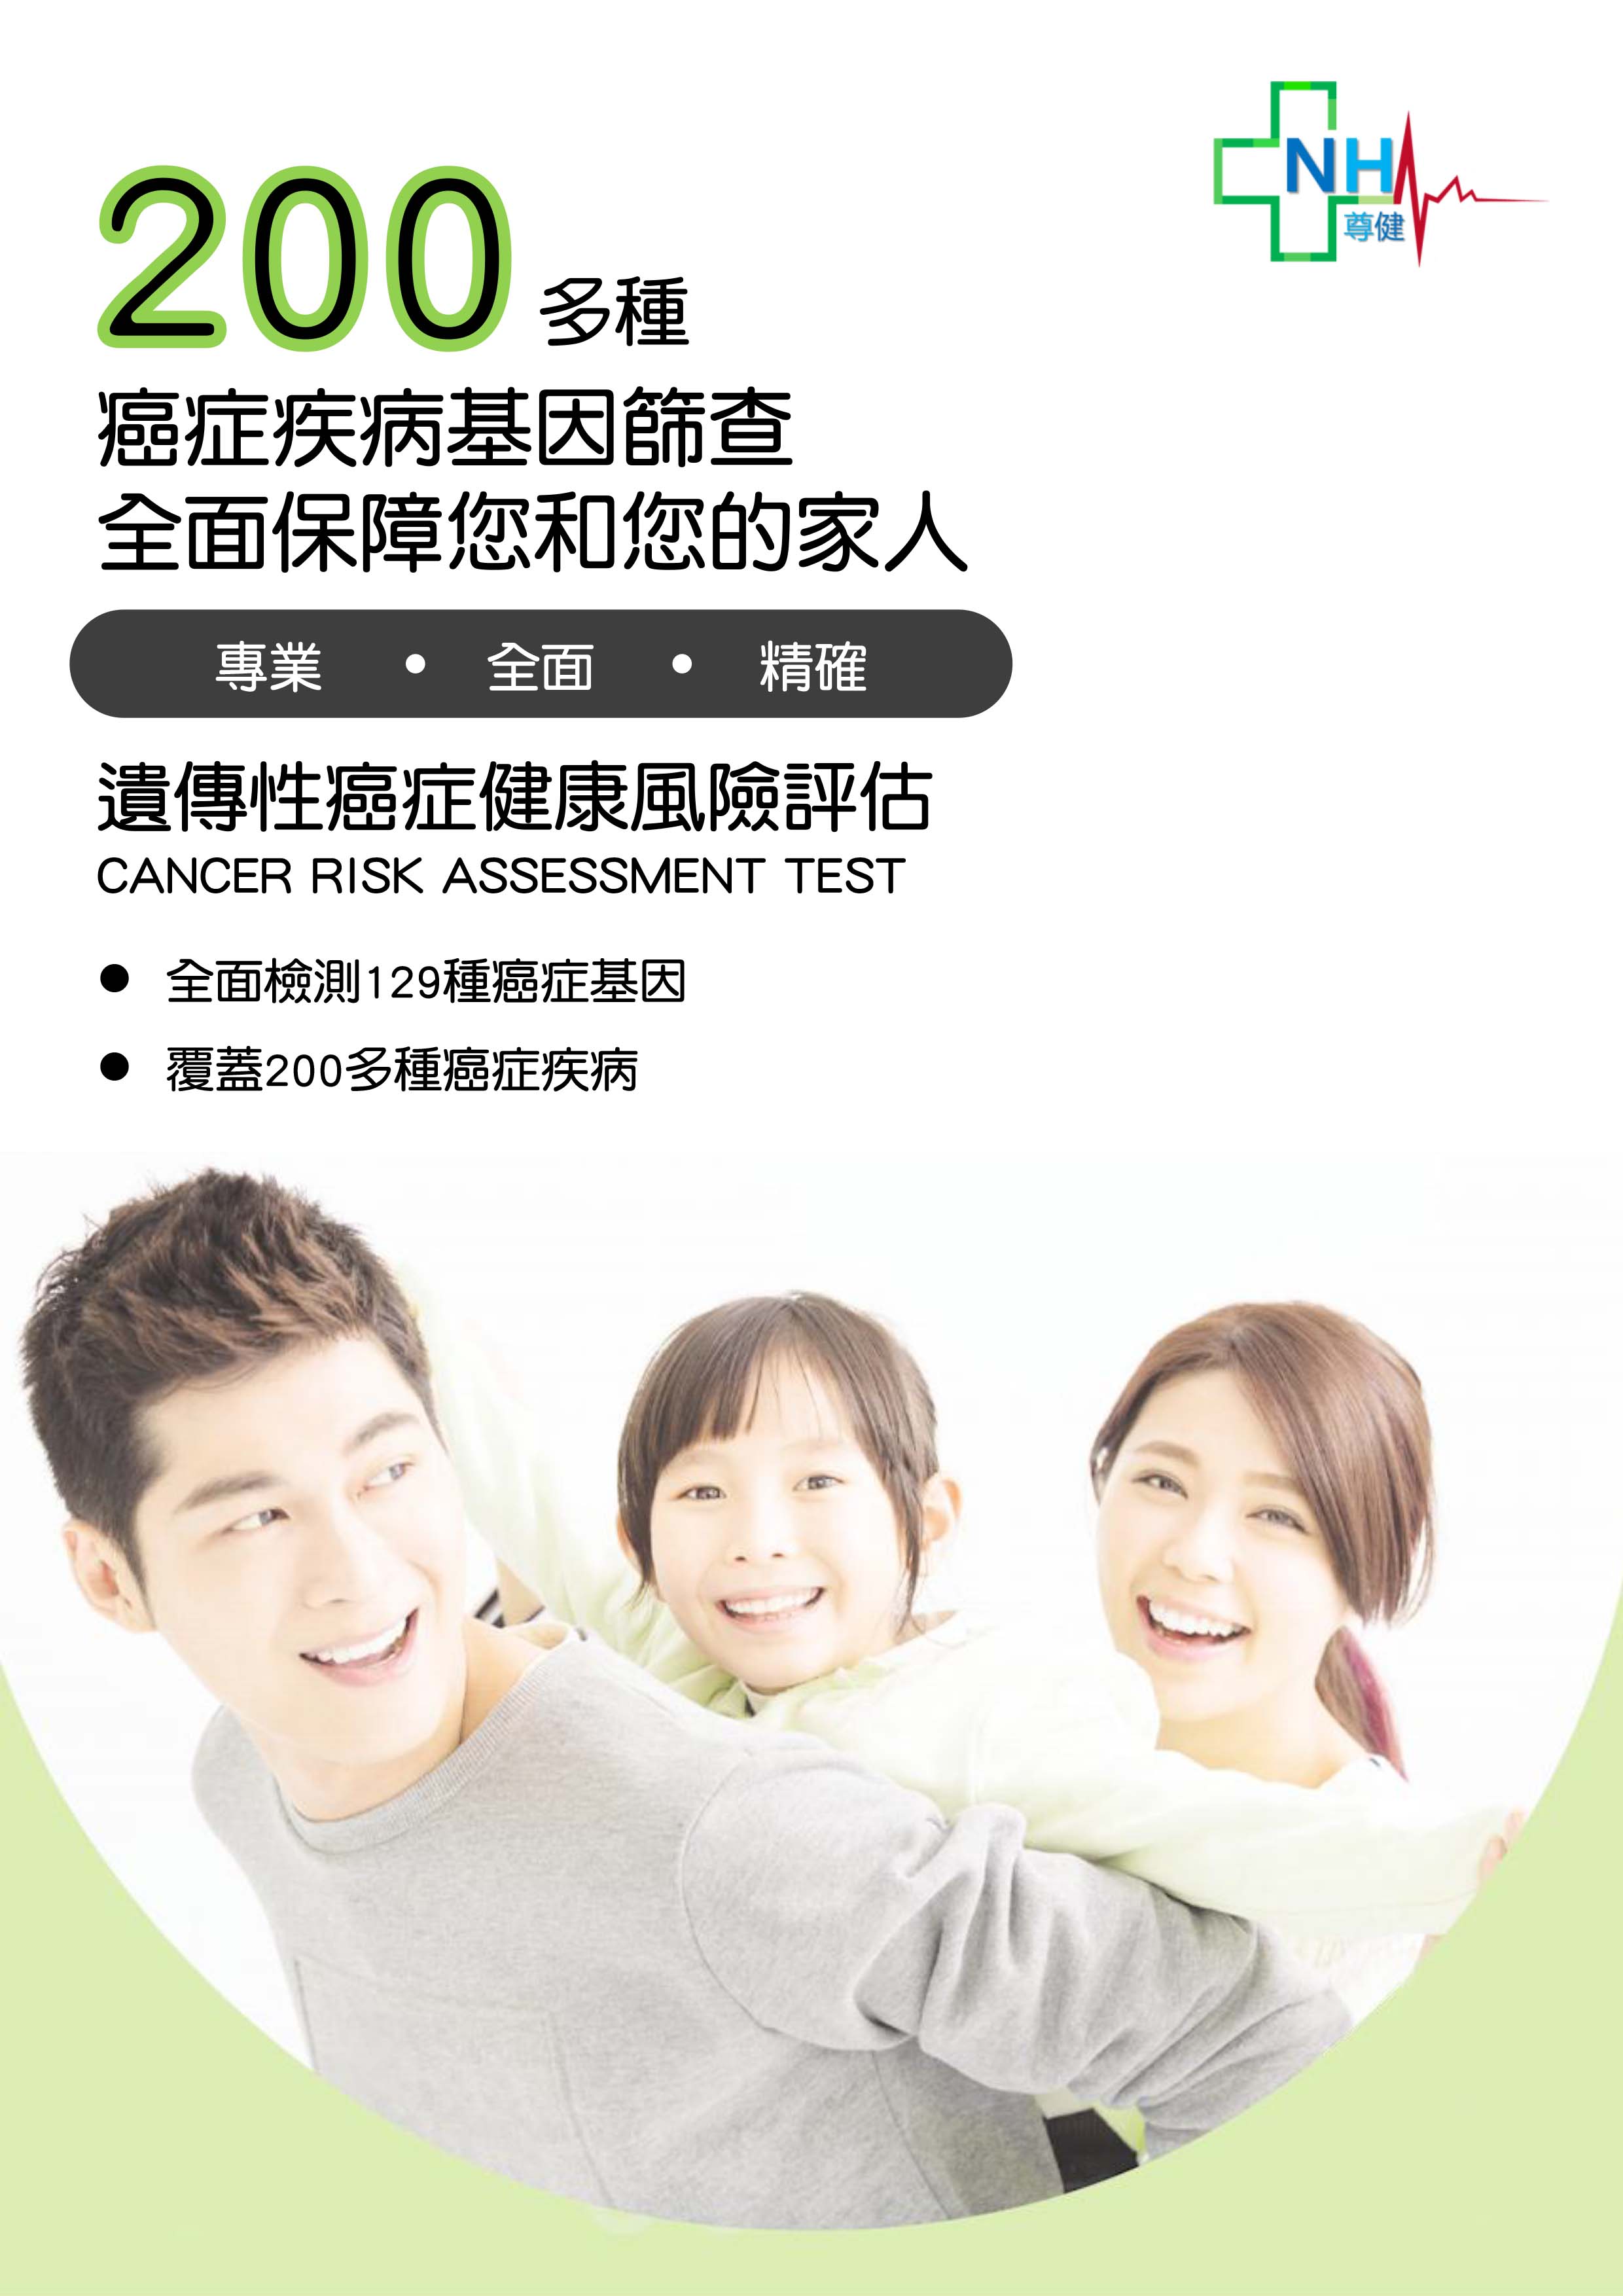 cancer-risk-assessment-test-1.jpg